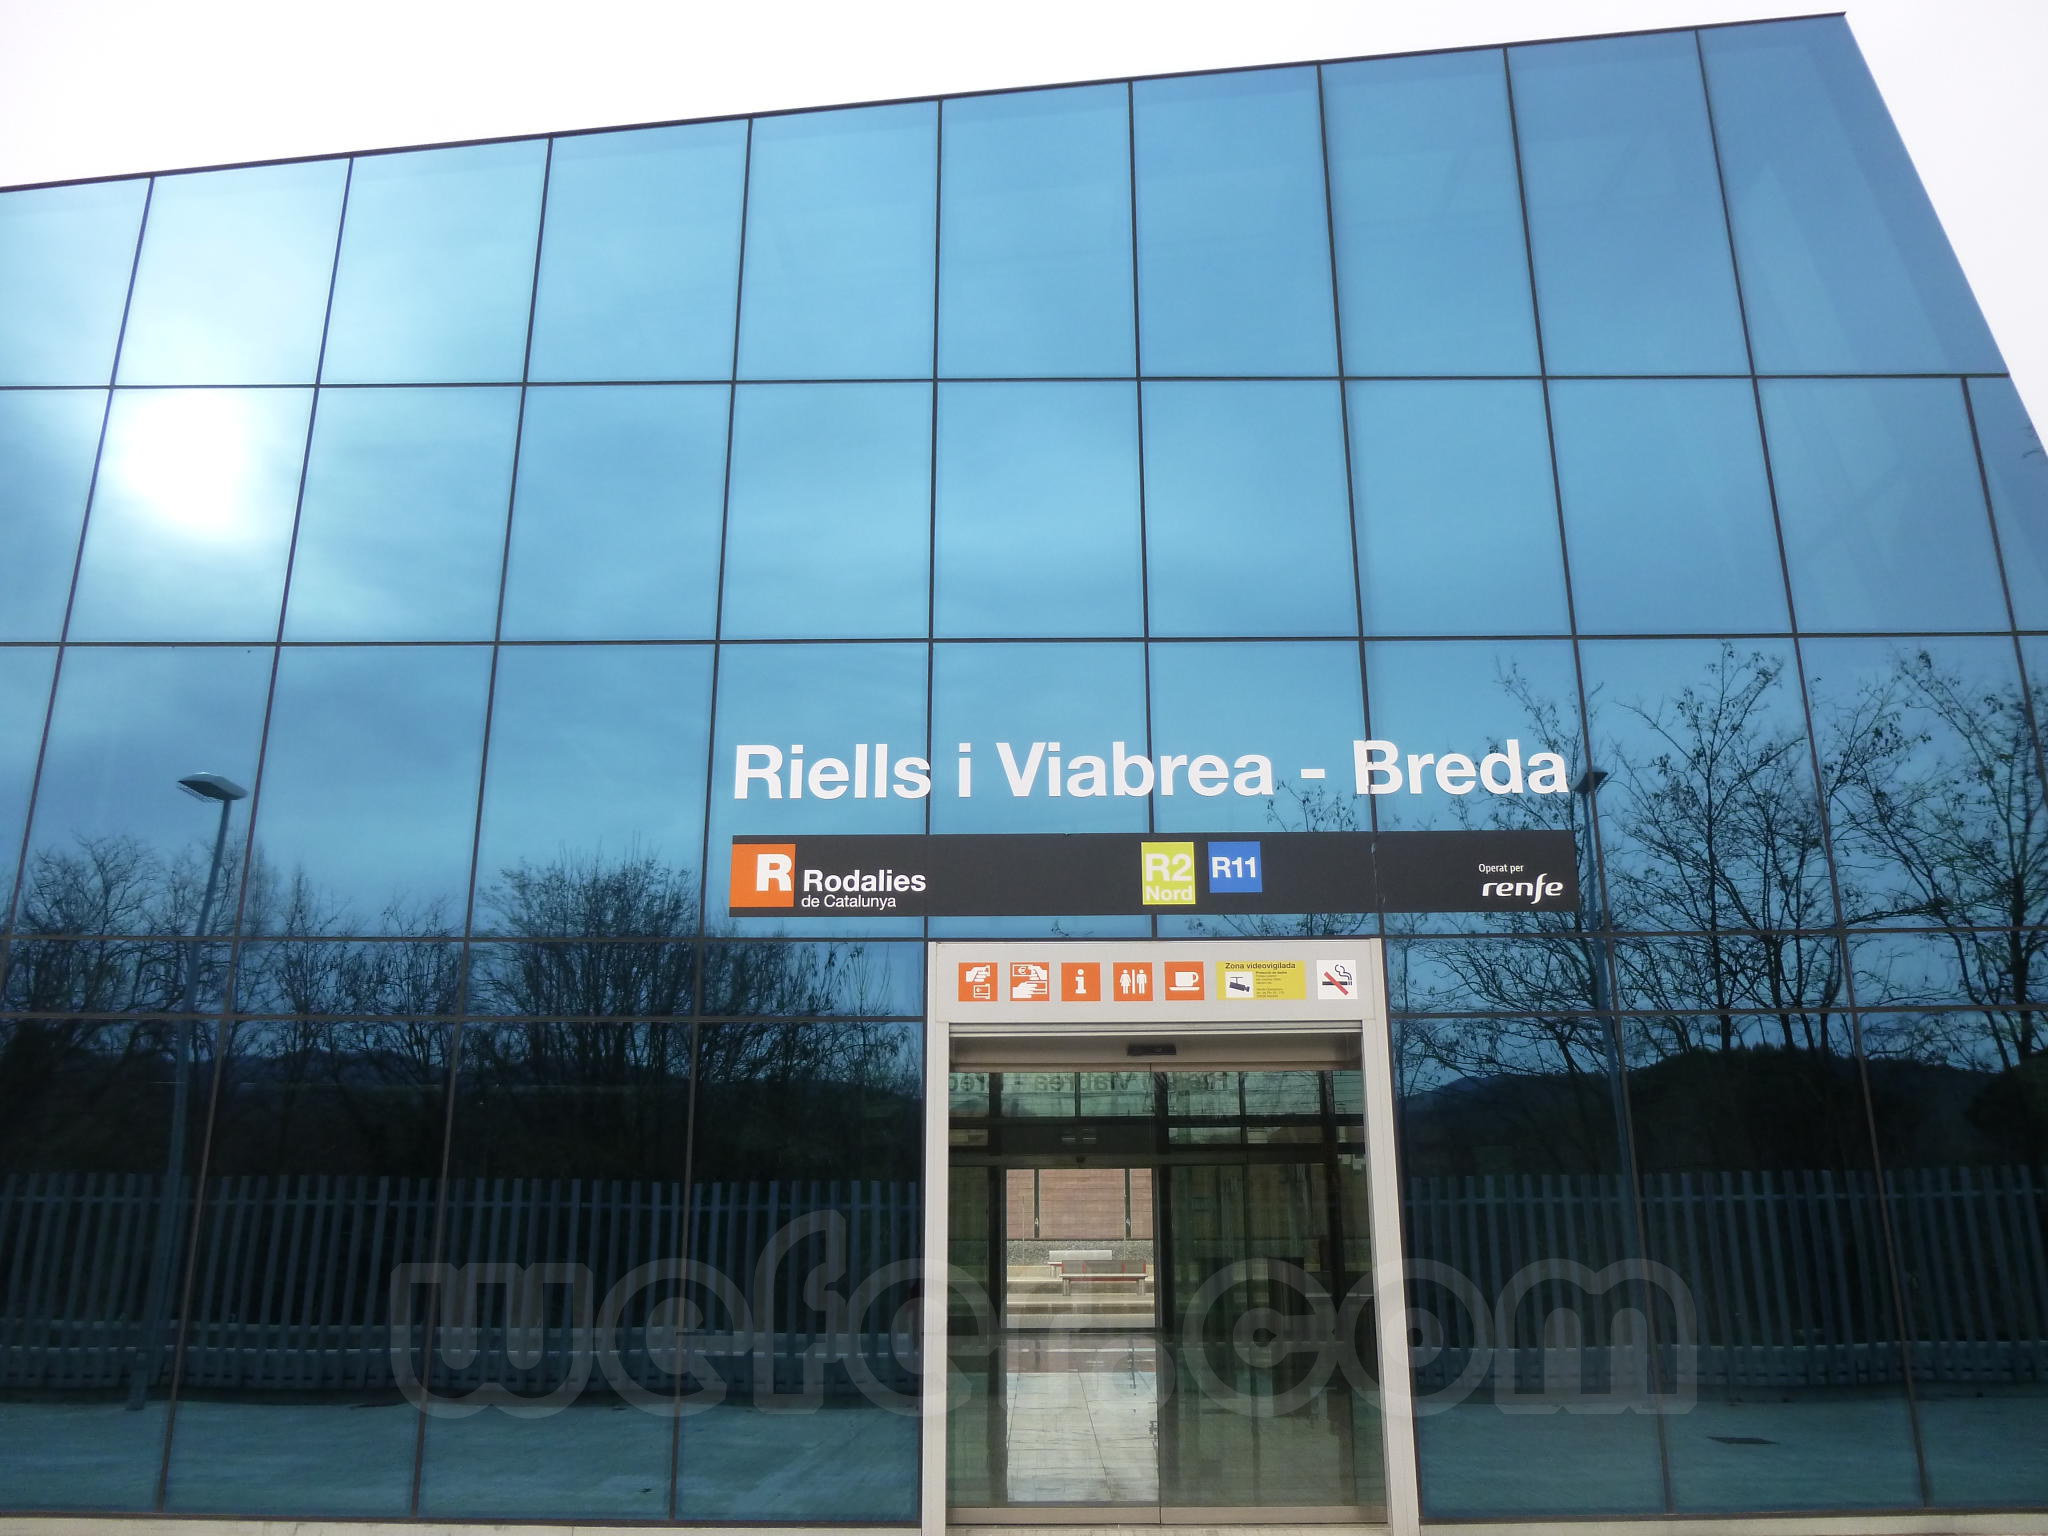 Renfe / ADIF: Riells i Viabrea - Breda